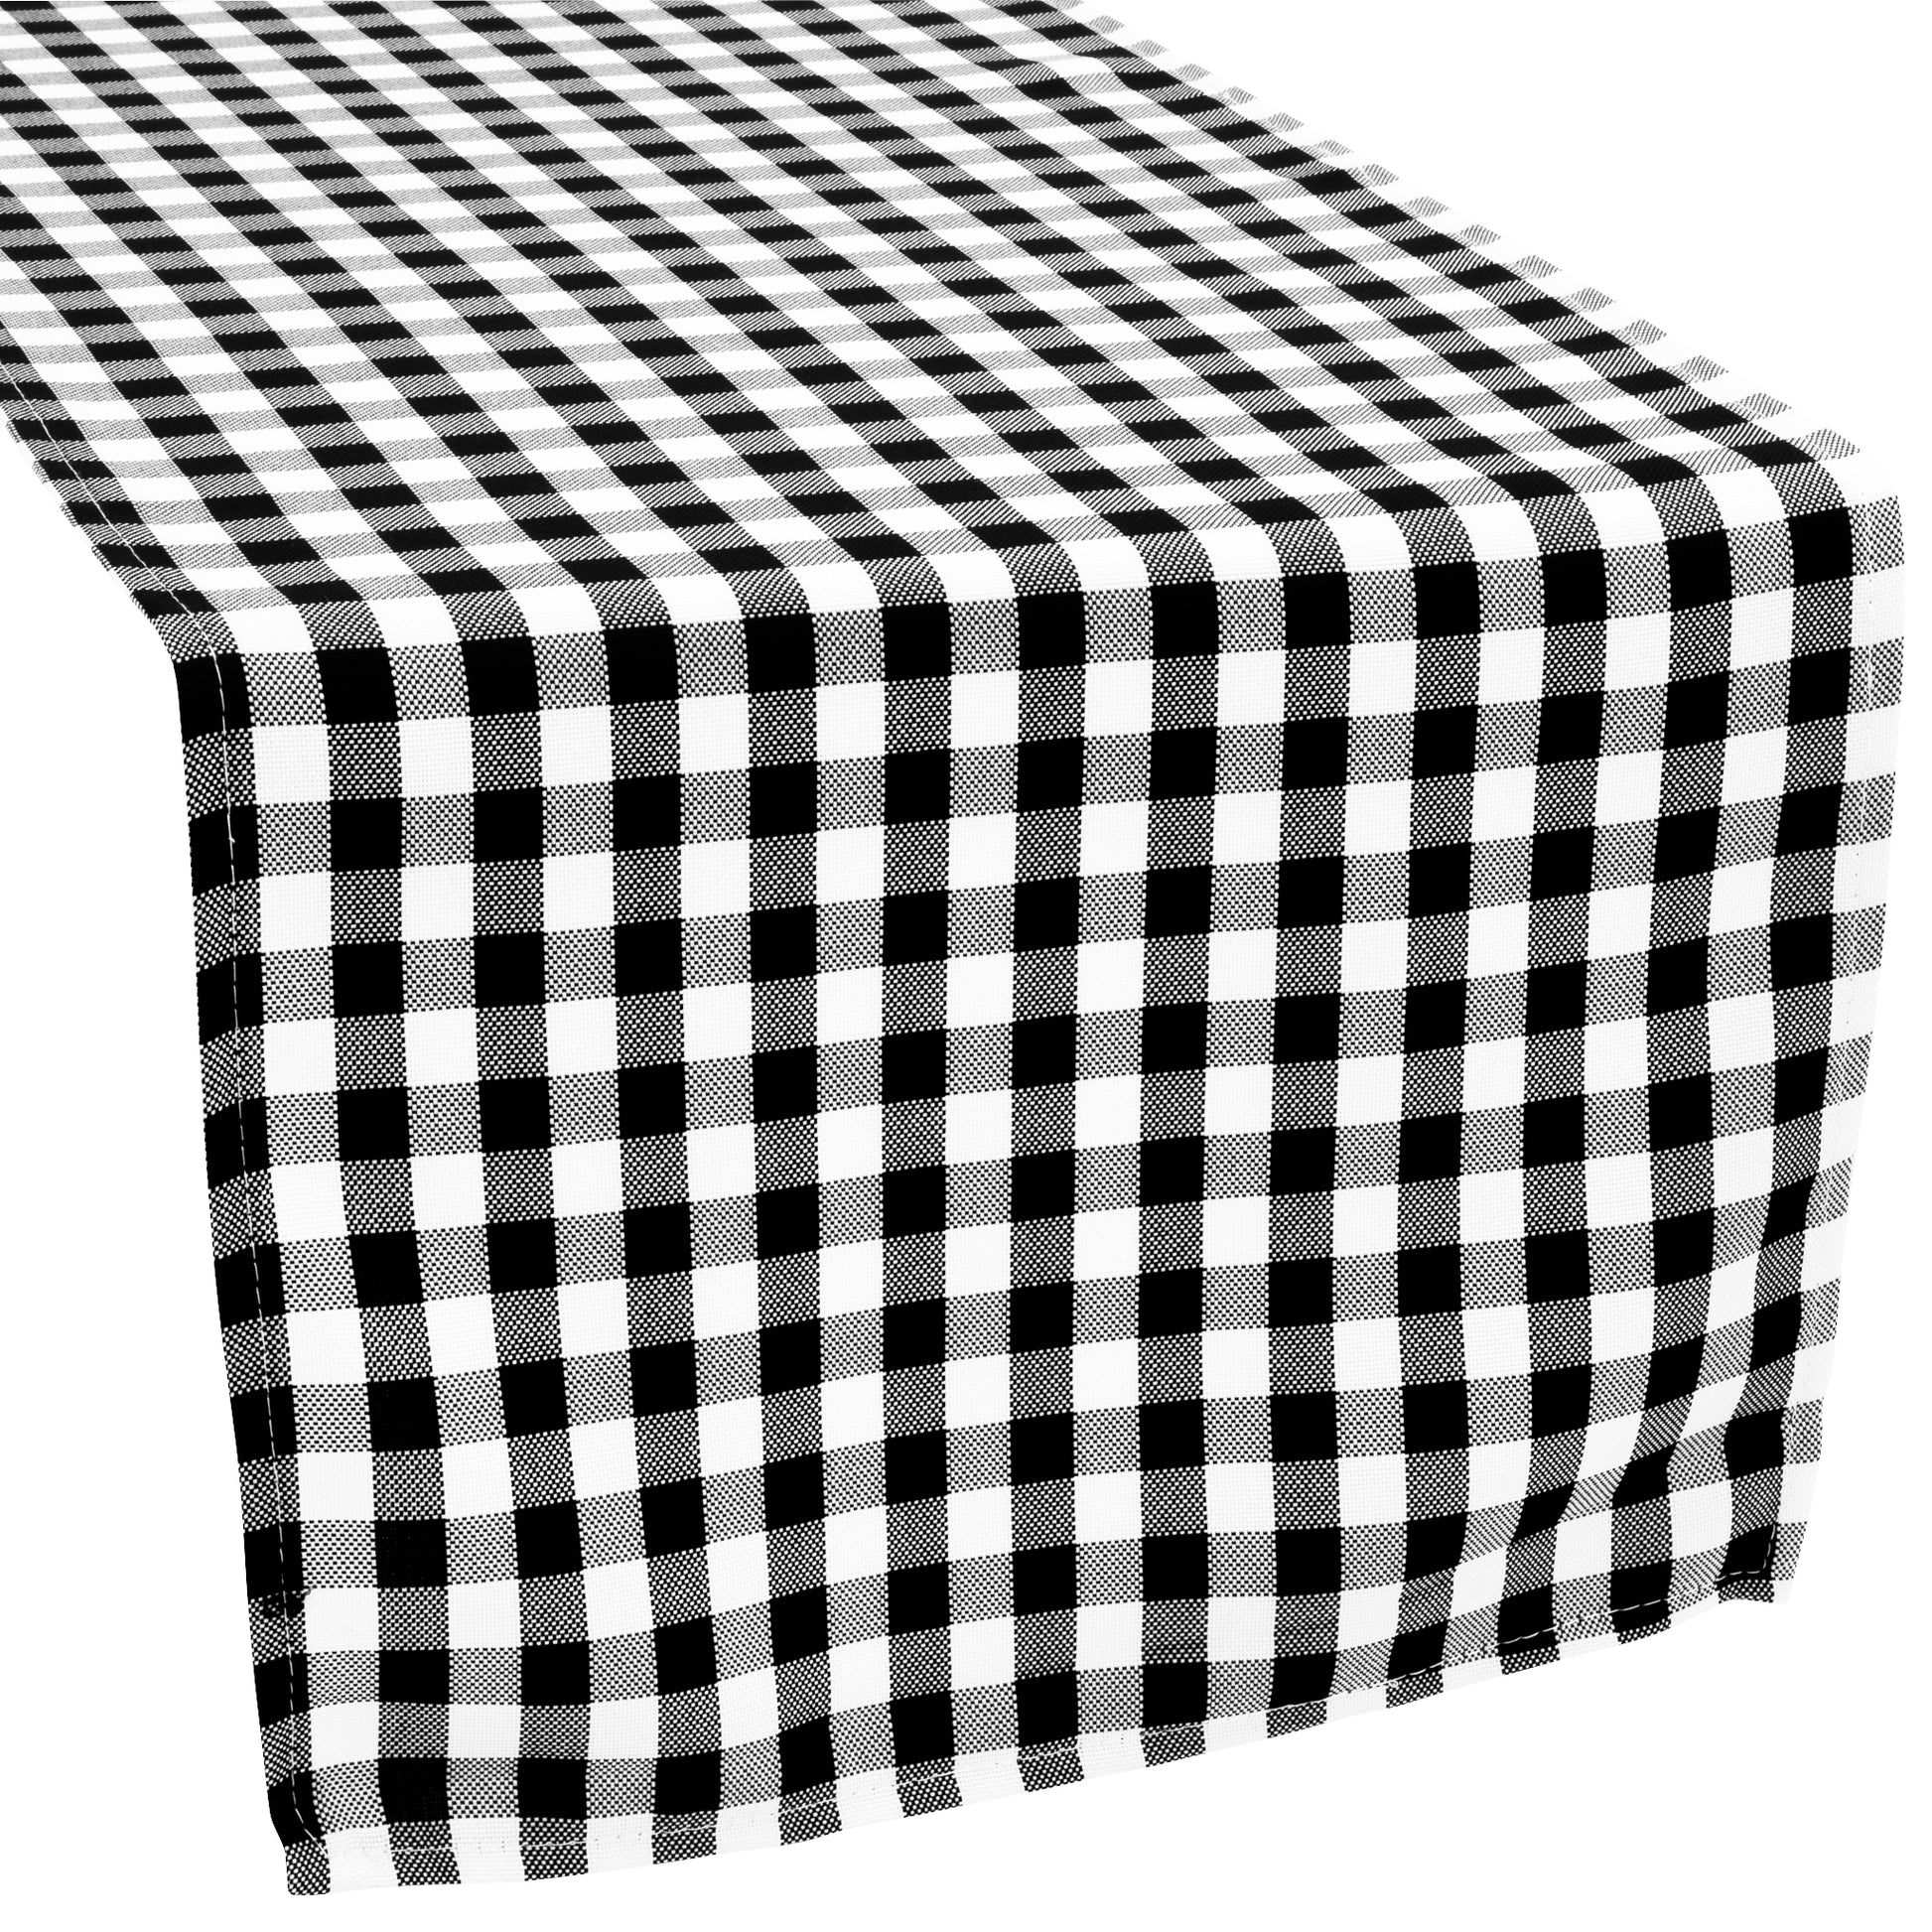 1/2" Gingham Checkered Polyester Table Runner - Black & White - CV Linens